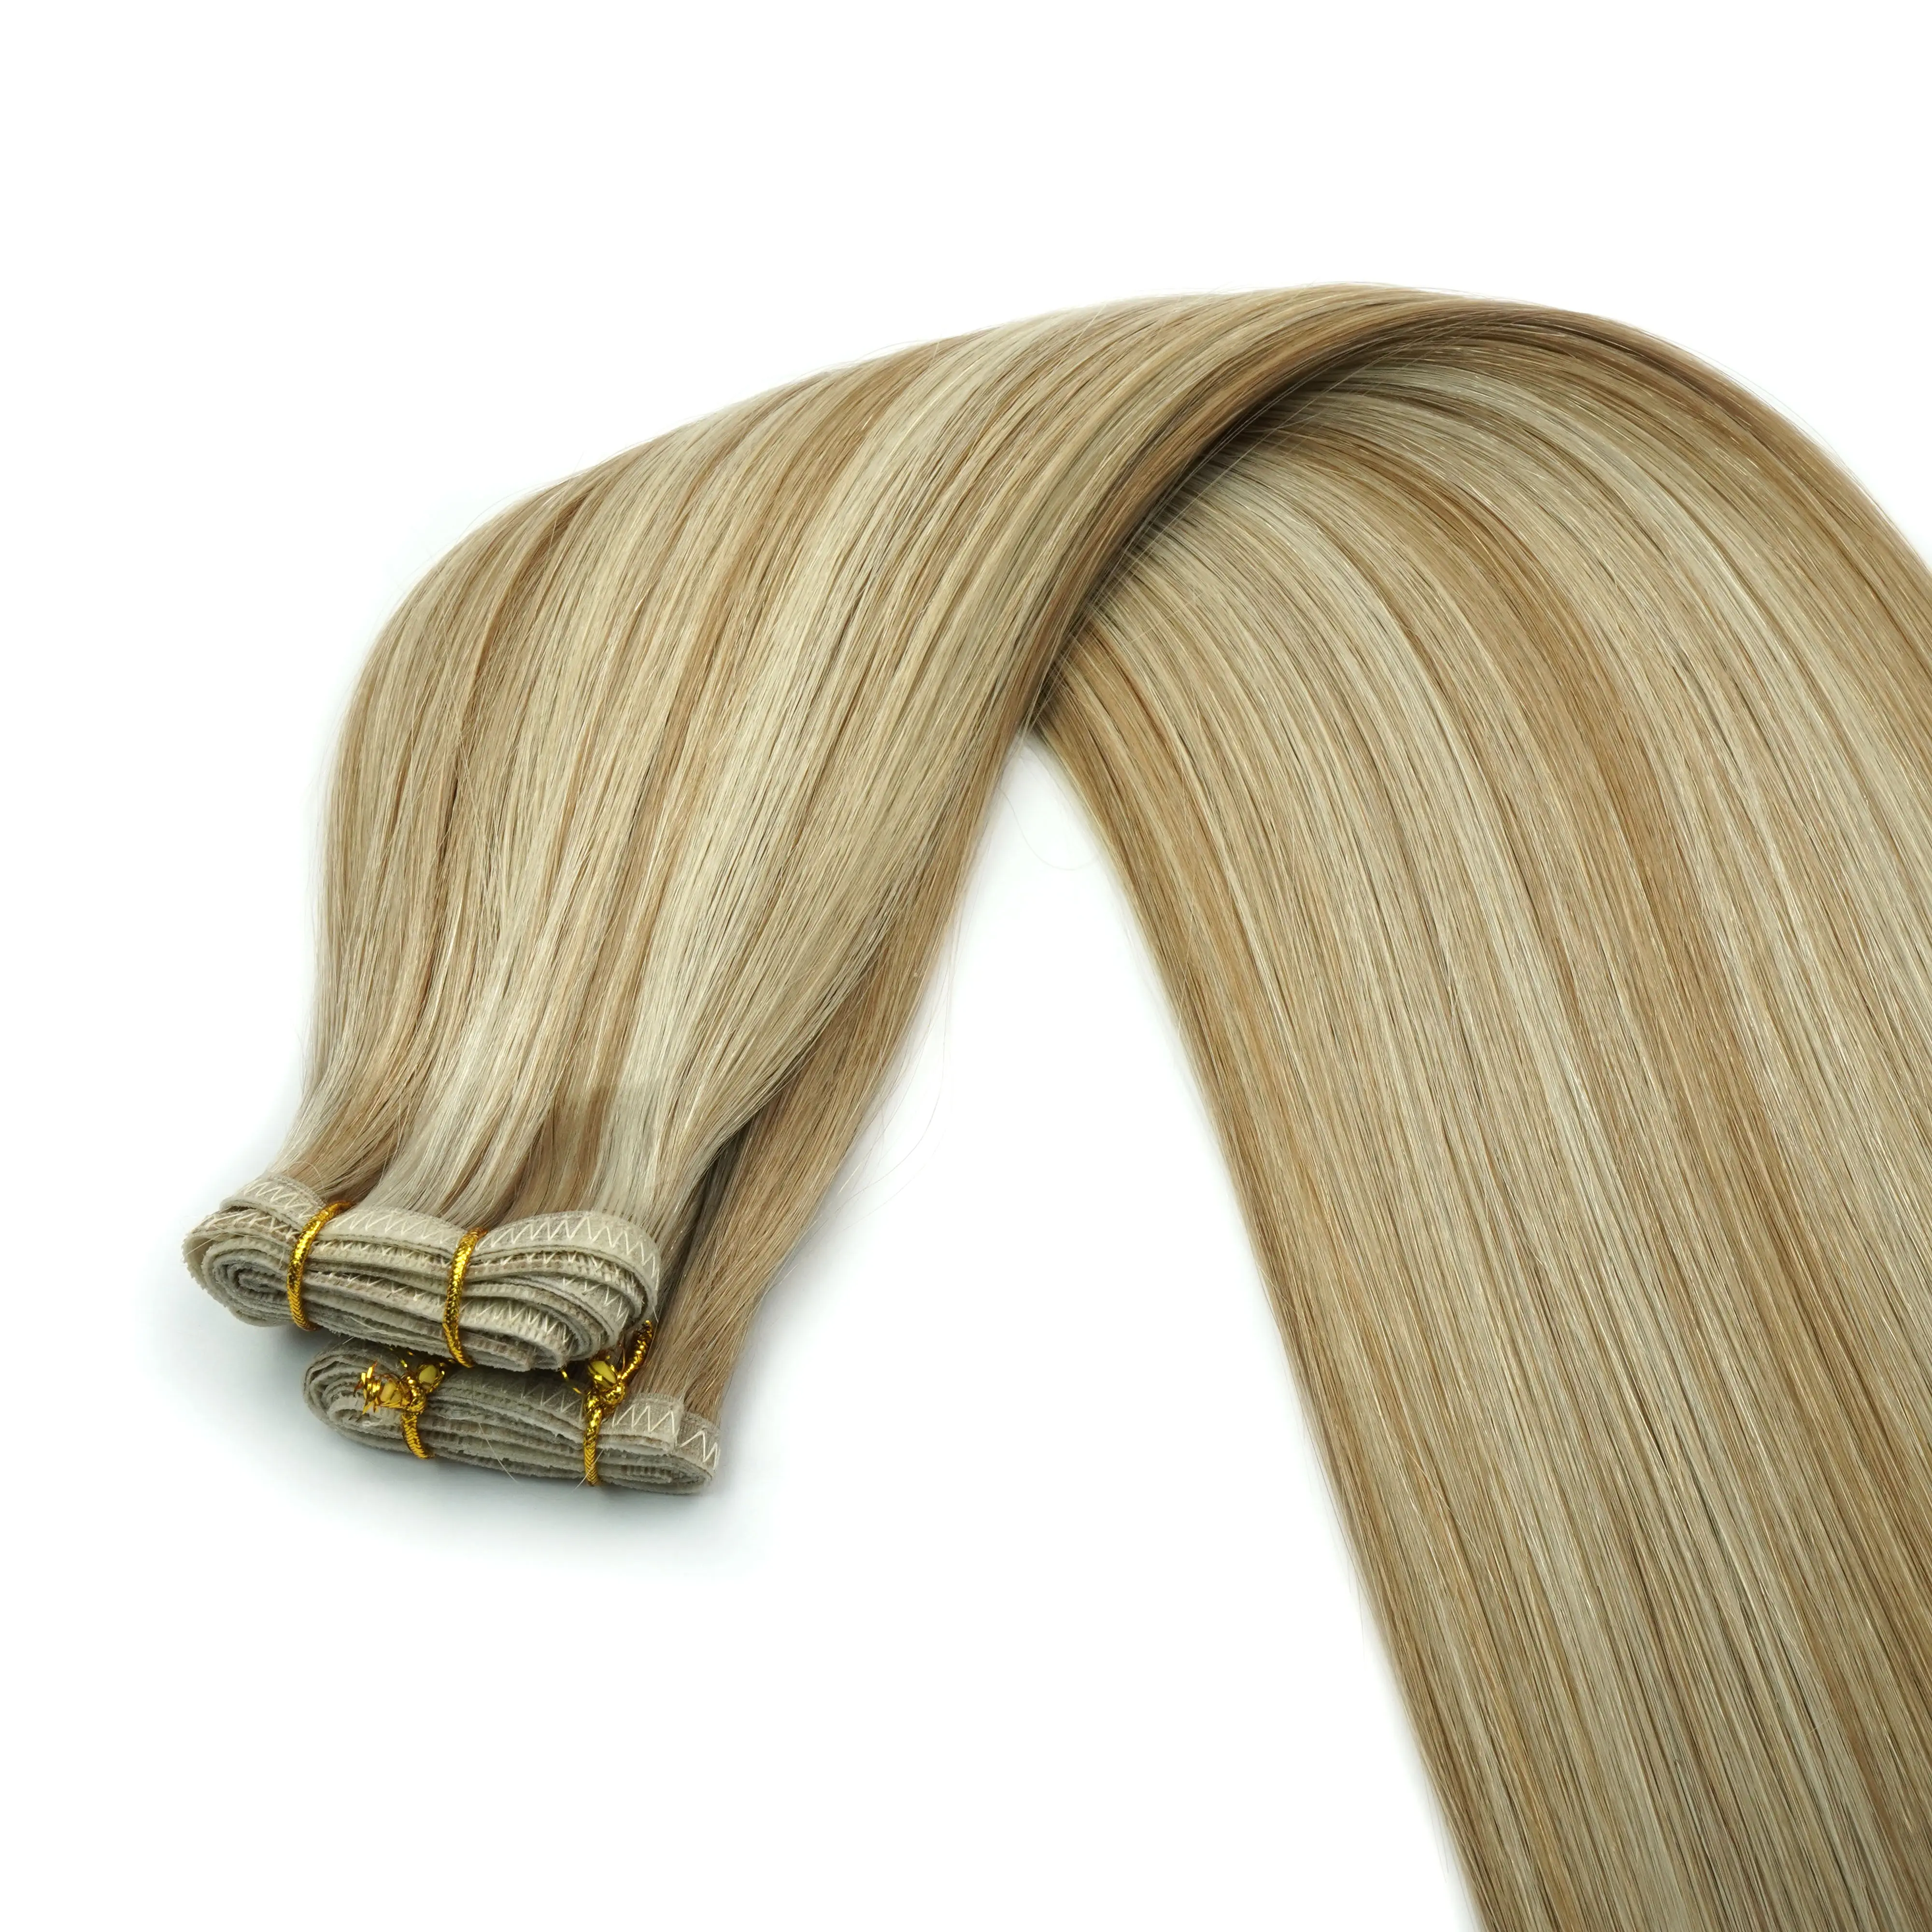 Trame plate de luxe 100% cheveux humains cuticules complètes offre un Service personnalisé Invisible sans couture pas de perte pas d'emmêlement